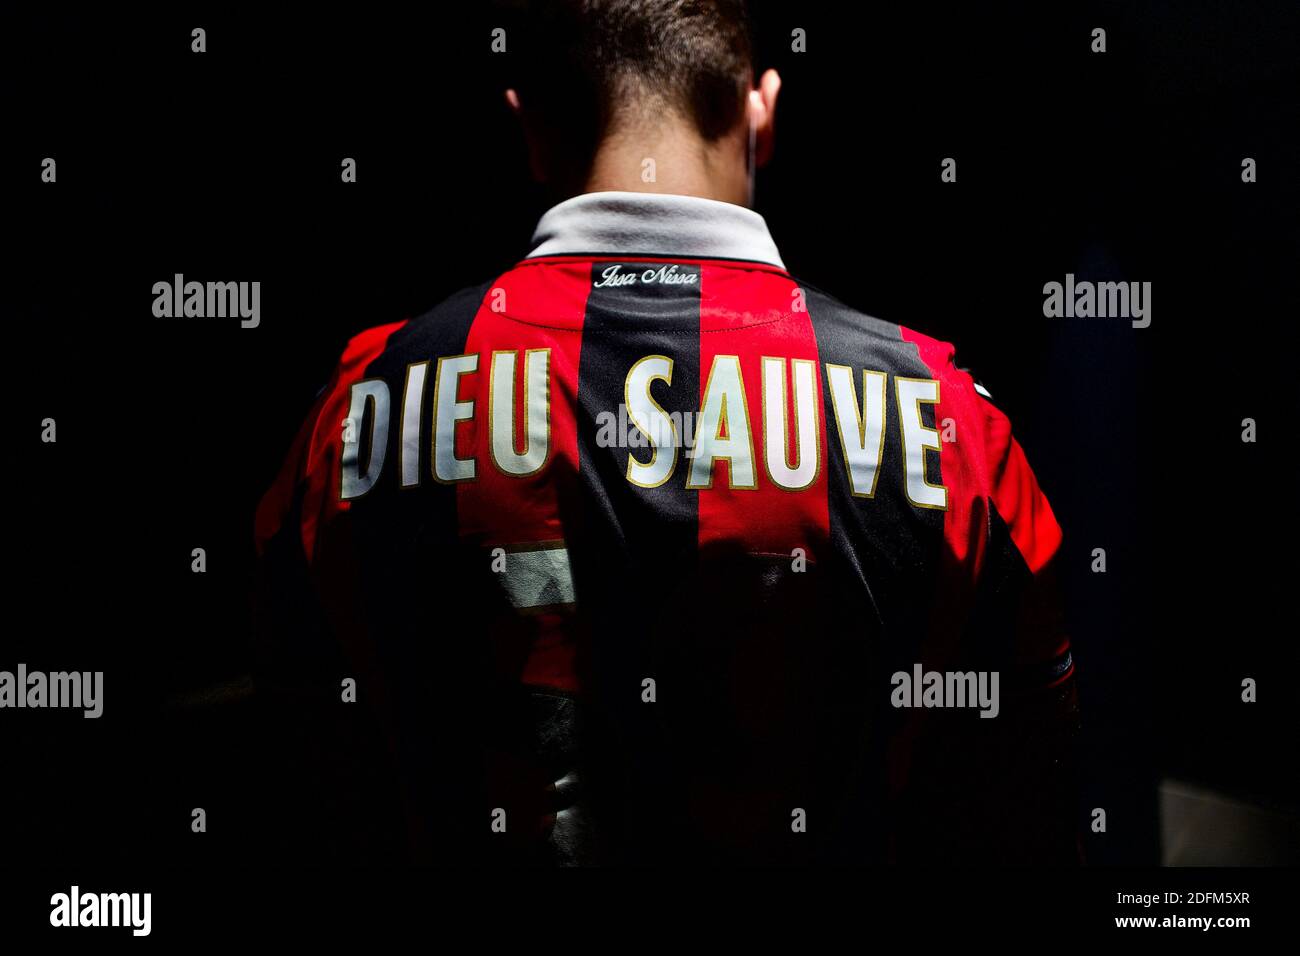 Ilustración una camiseta del equipo de fútbol Olympique Gymnaste Club Nice (OGC Nice) con 'Dieu Sauve (God saves)' escrita en la espalda, el ataque terrorista del jueves por mañana,